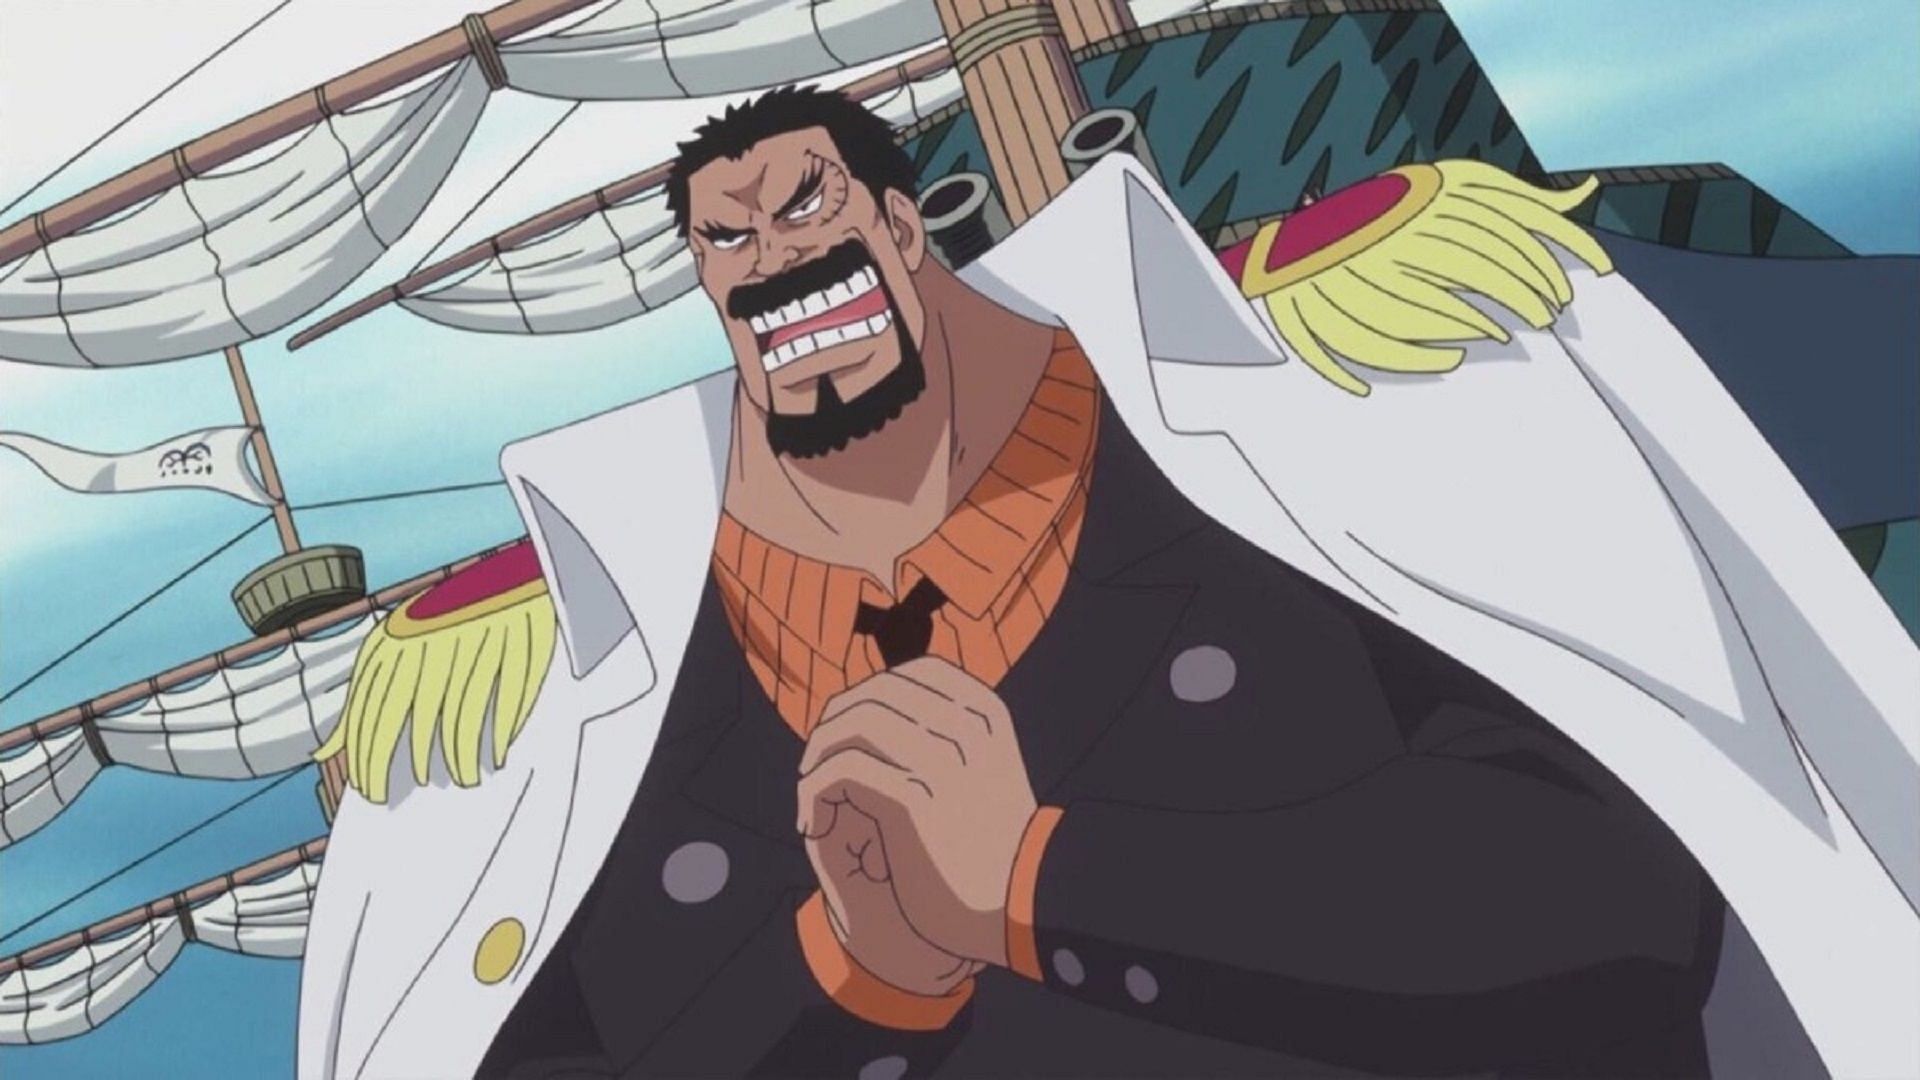 Garp (Image via Toei Animation, One Piece)